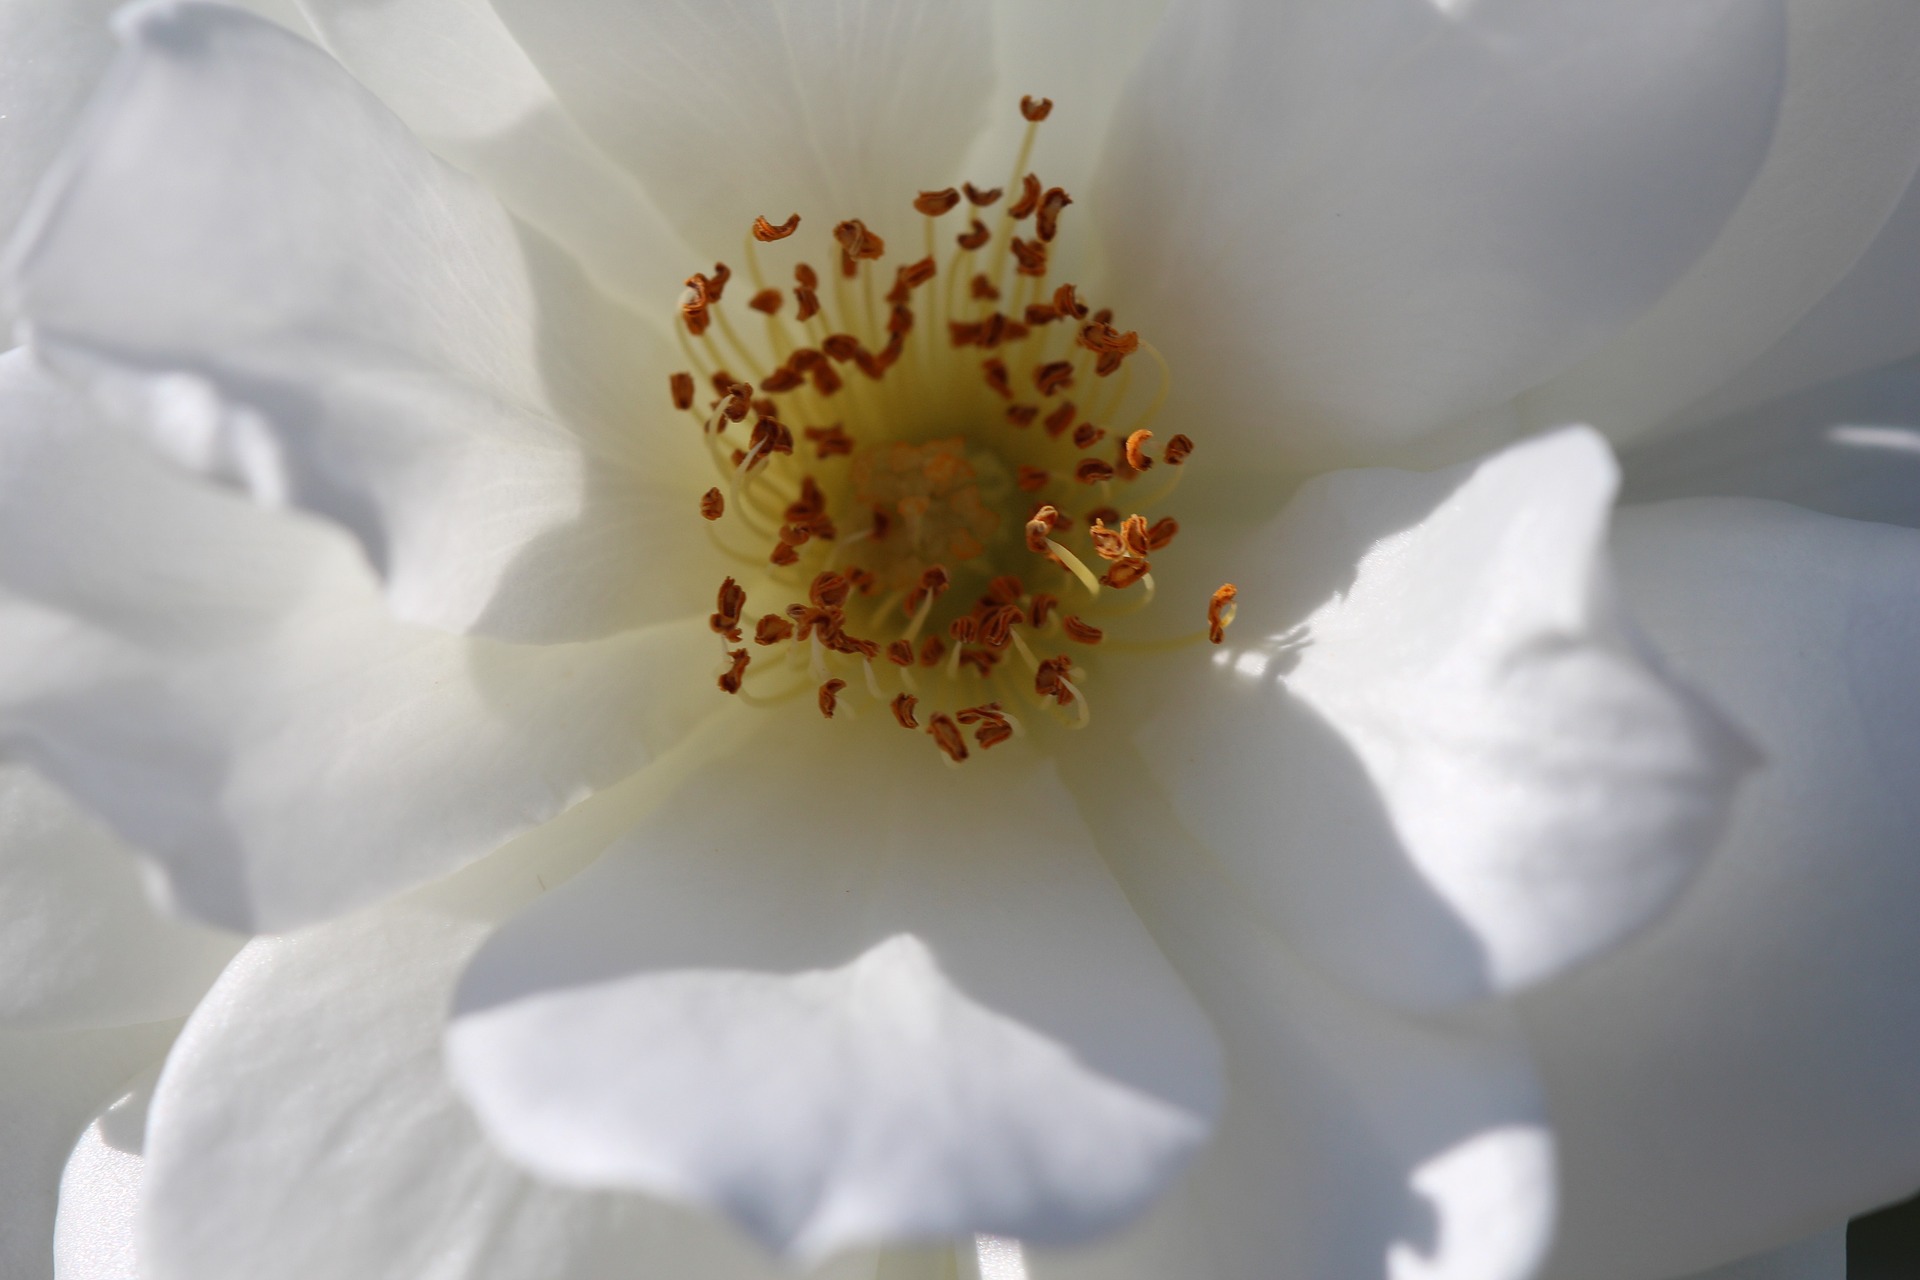 Na zdjęciu widać piękną, białą gardenię kwiat, która rozkwita w pełni swojego piękna. Jej płatki są delikatne, niemal przezroczyste, a w samym środku kwiatu widoczne są charakterystyczne, żółte pręciki. Roślina ta emanuje pięknym, intensywnym zapachem, który z pewnością umili każdą chwilę spędzoną w jej bliskim sąsiedztwie